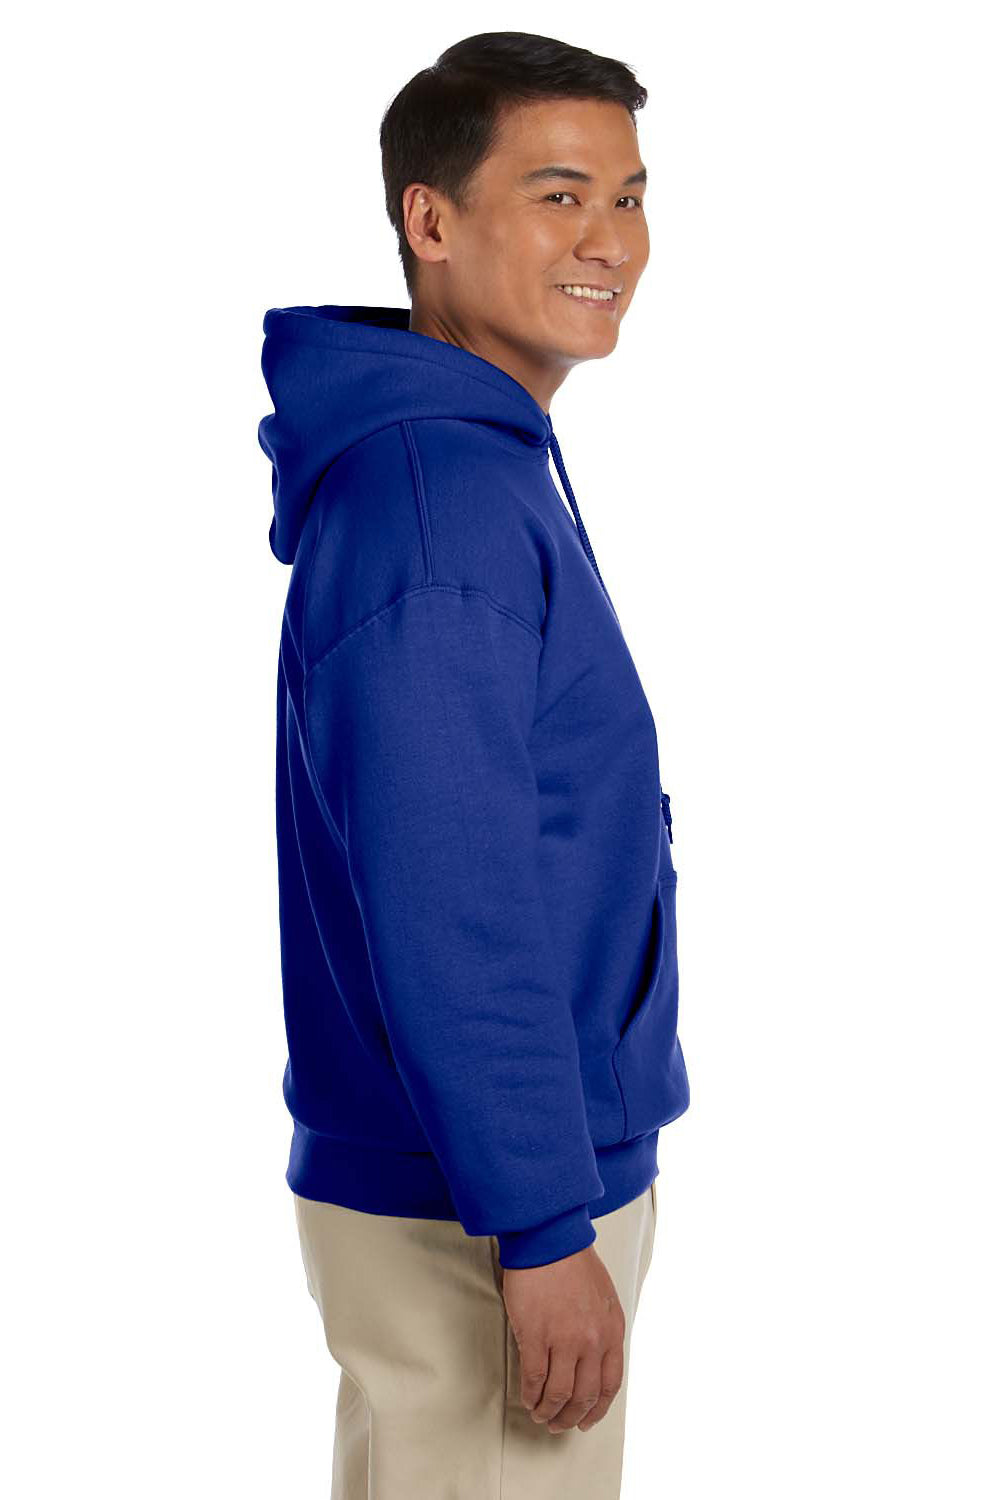 Gildan G185 Mens Hooded Sweatshirt Hoodie Royal Blue Side